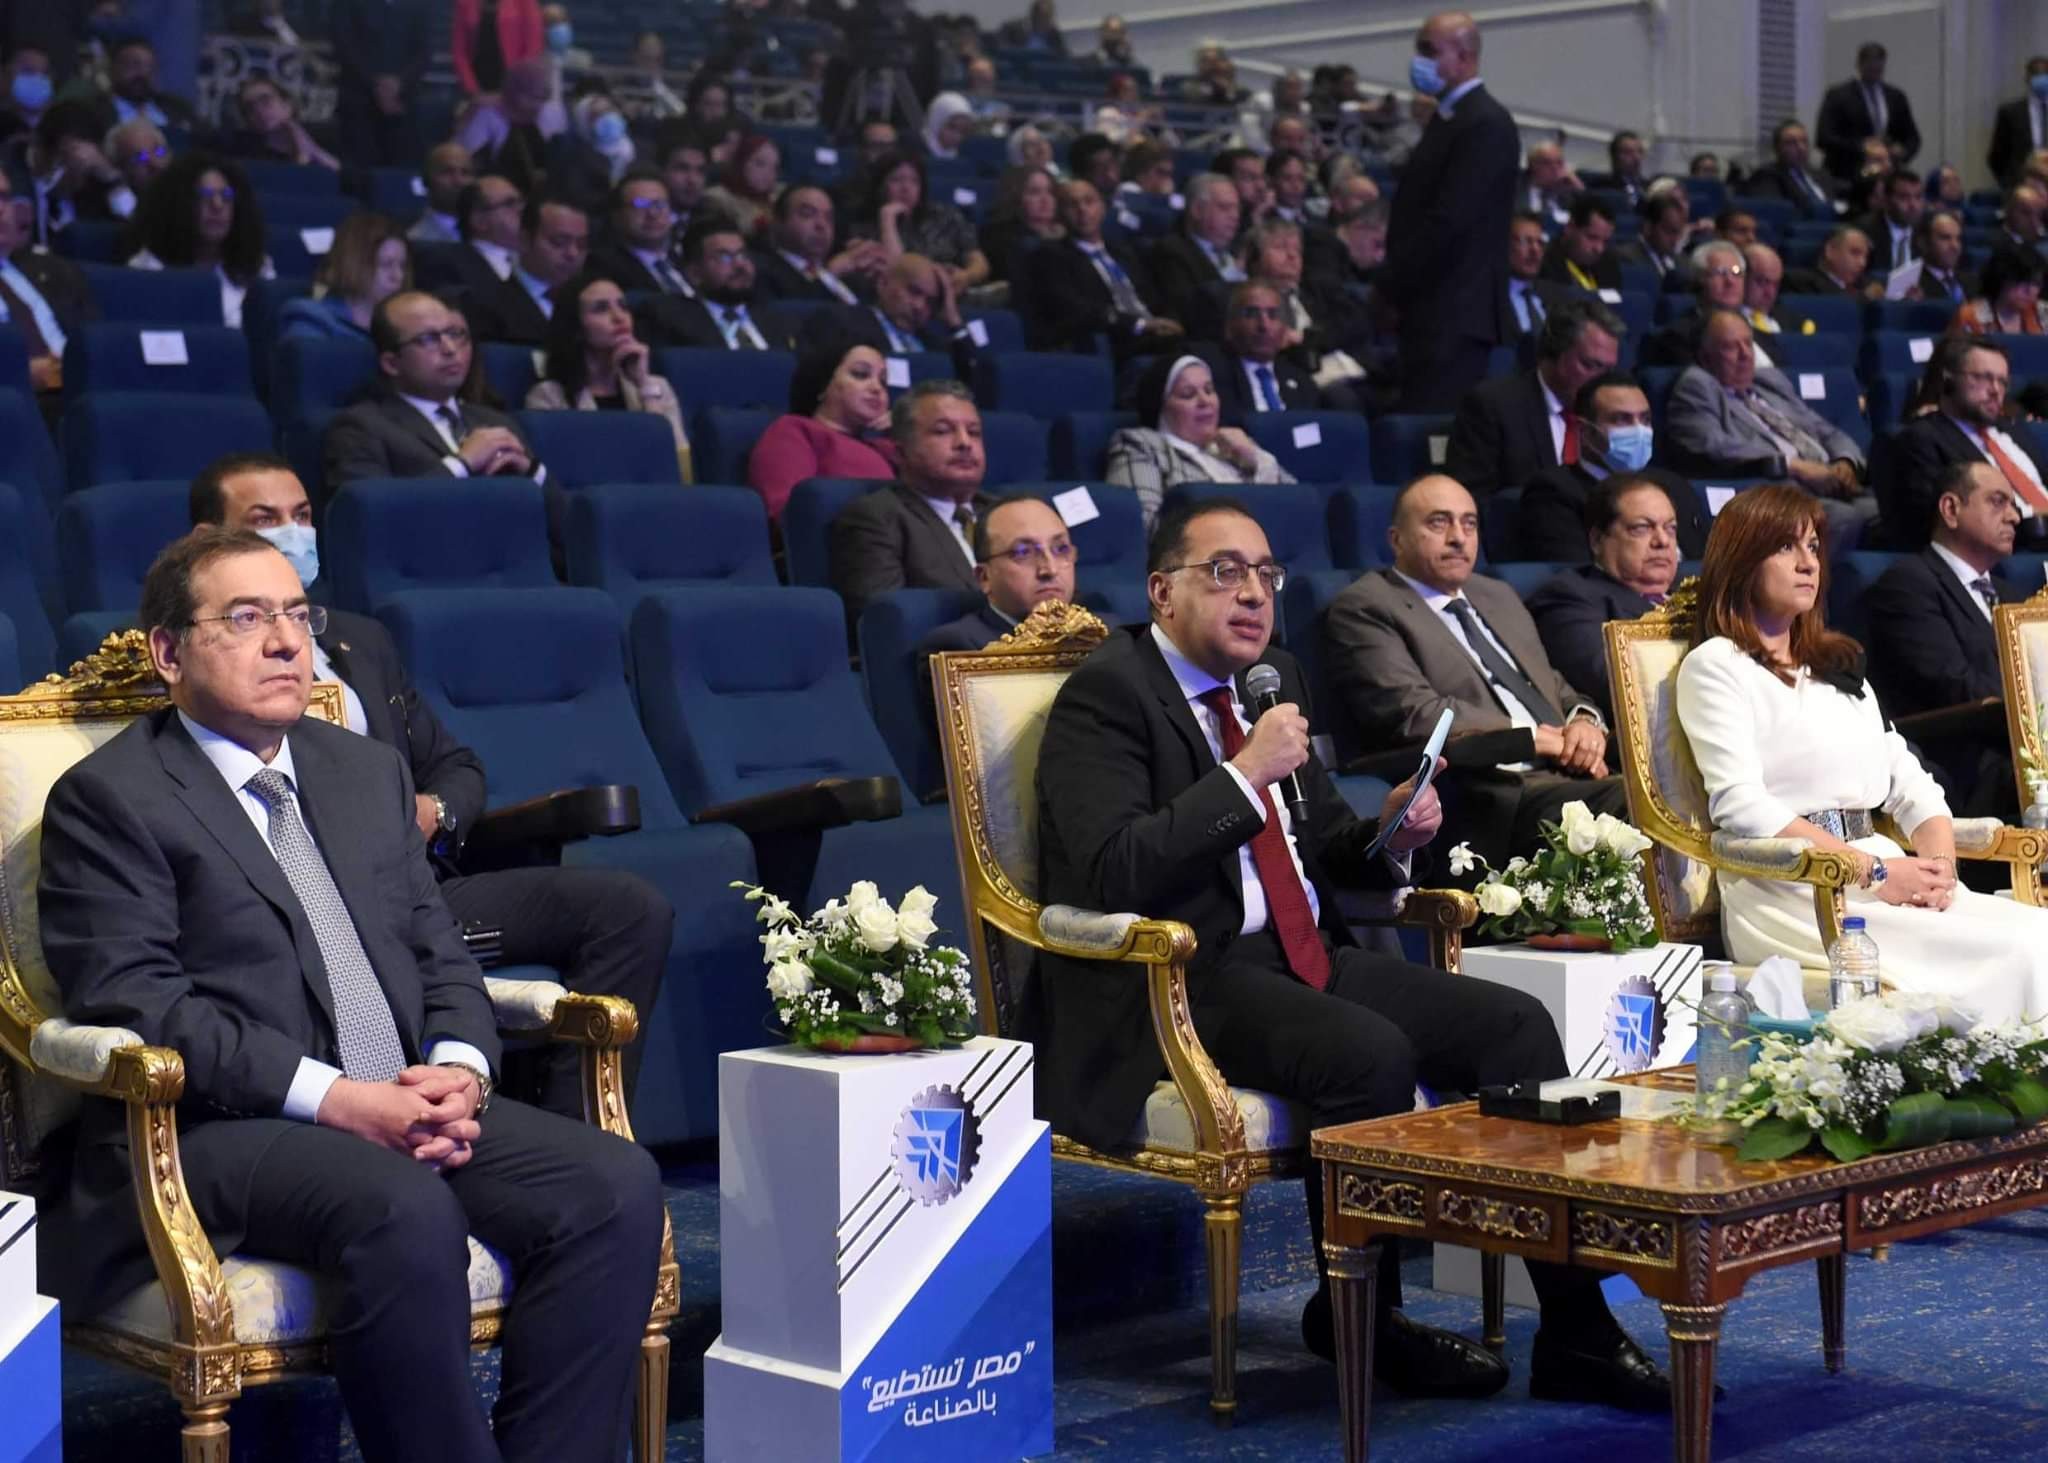 المشاركة فى مؤتمر "مصر تستطيع" بالصناعة تدعم القطاع بقوة